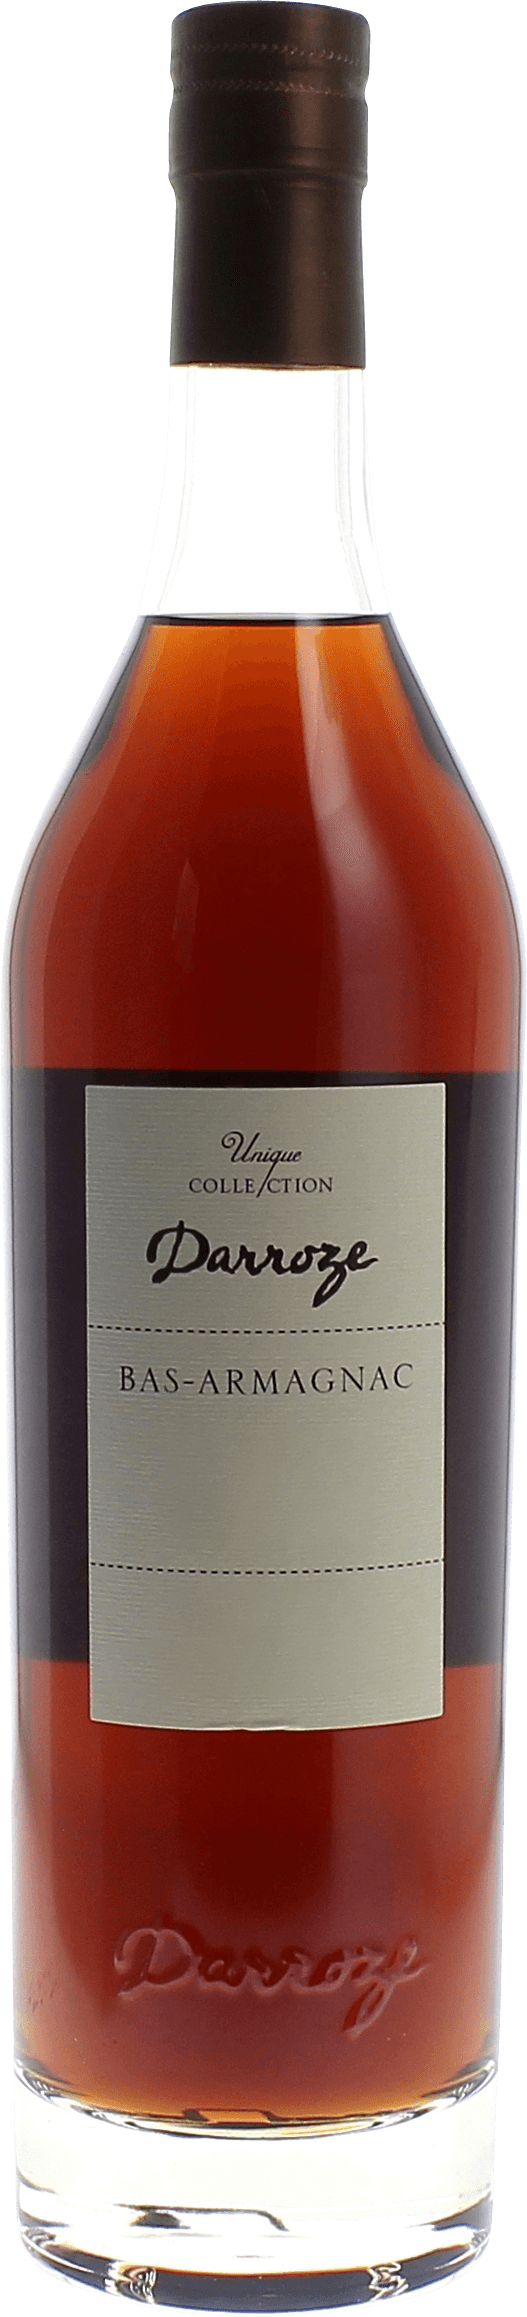 Domaine de barigos 45,8 1989  Bas Armagnac, DARROZE  Francis Bas Armagnac